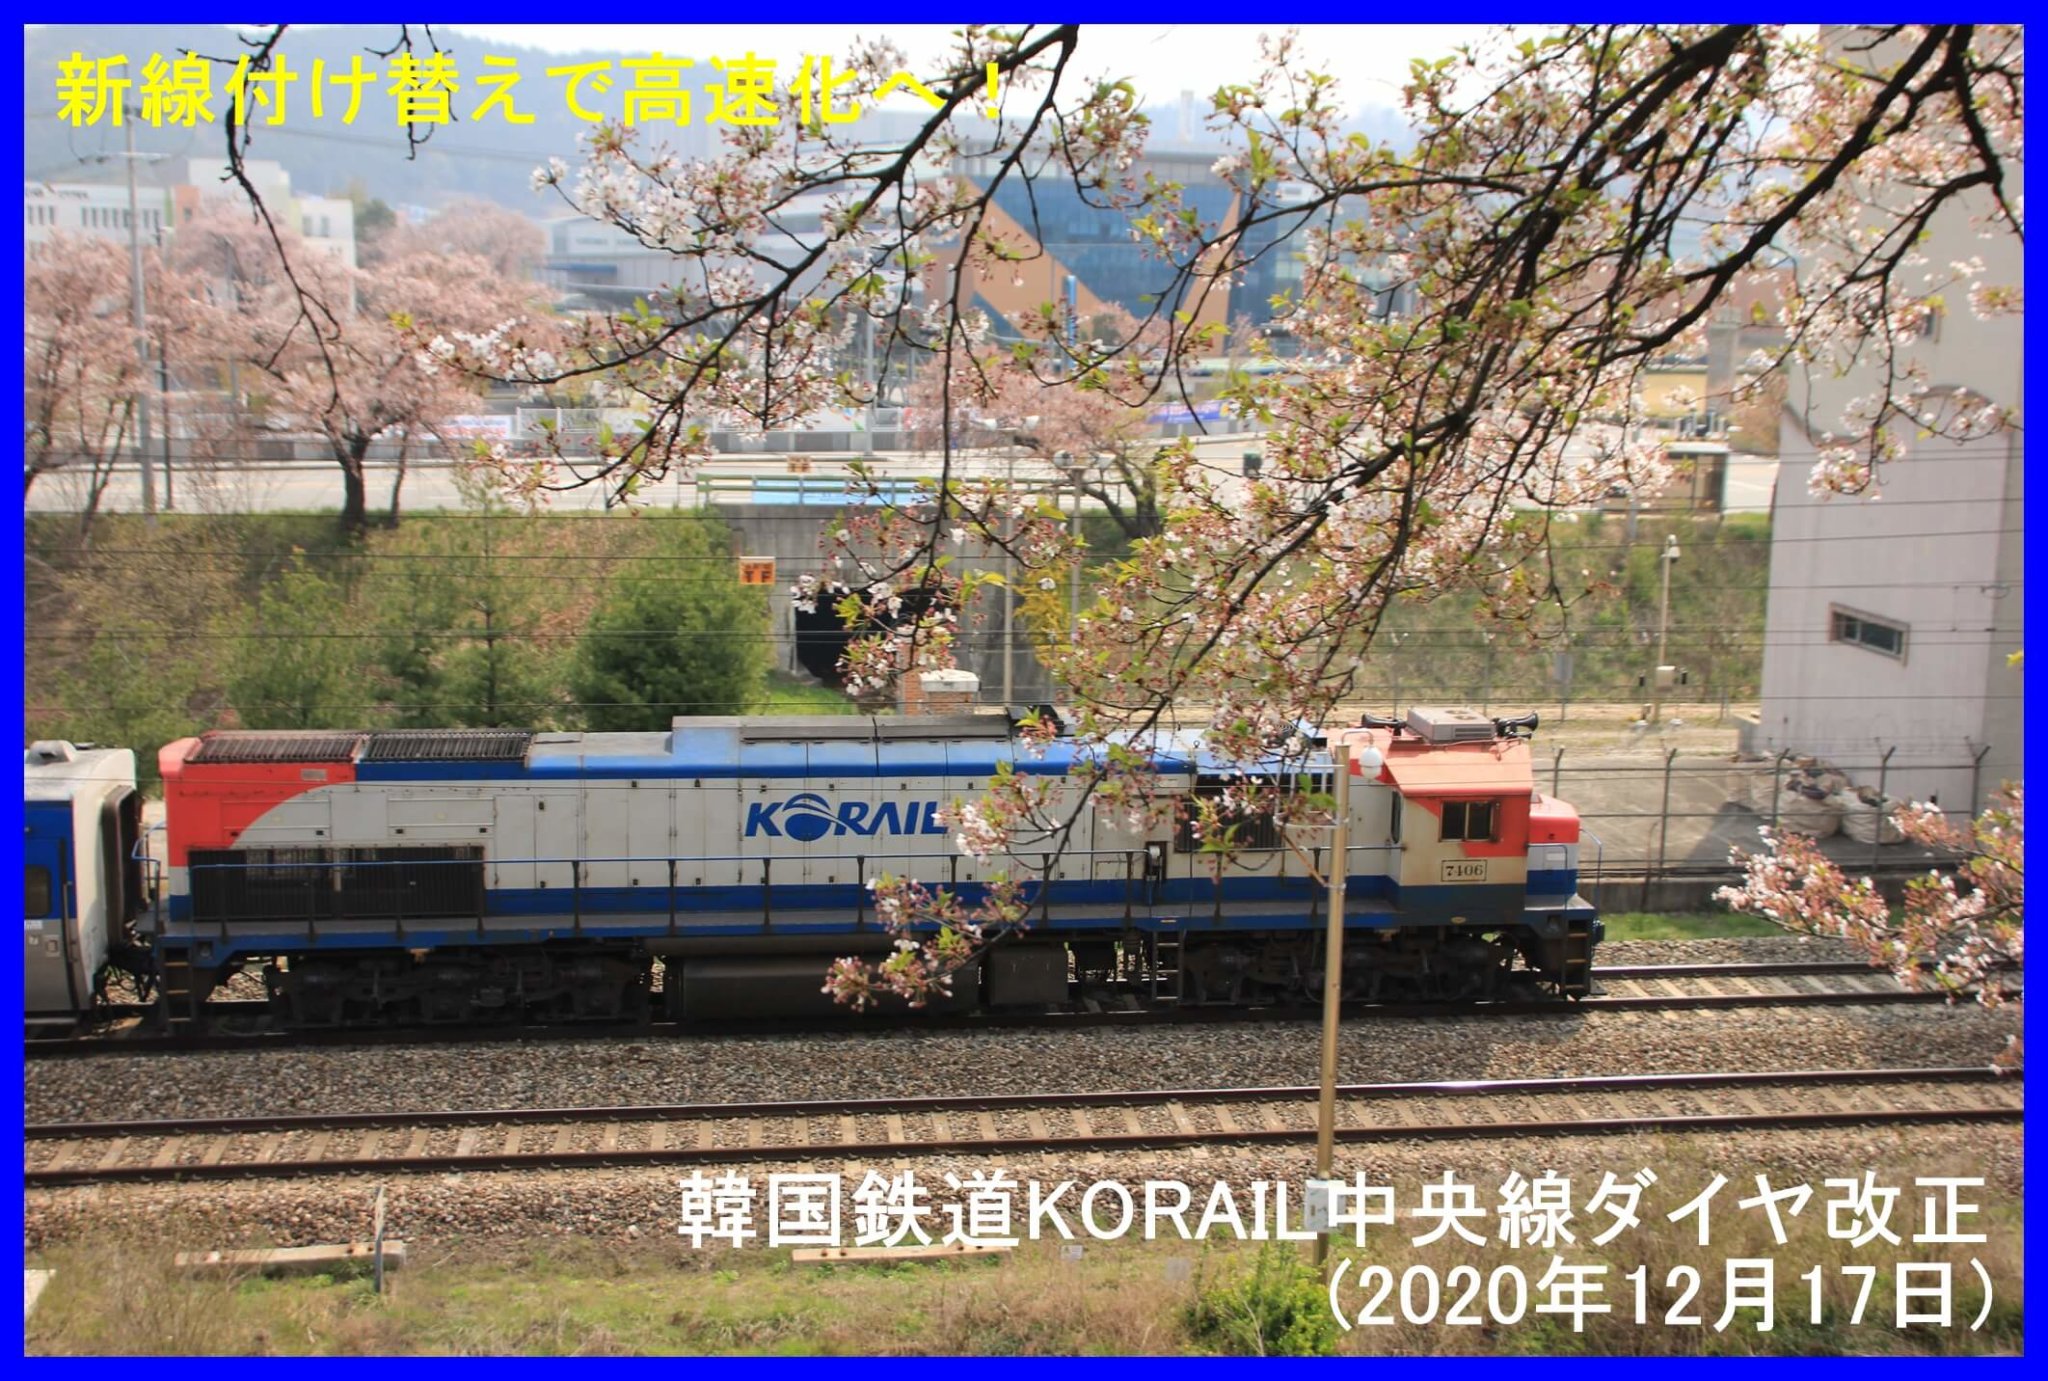 新線付け替えで高速化へ！　韓国鉄道KORAIL中央線ダイヤ改正(2020年12月17日)　중앙선 운행선 변경